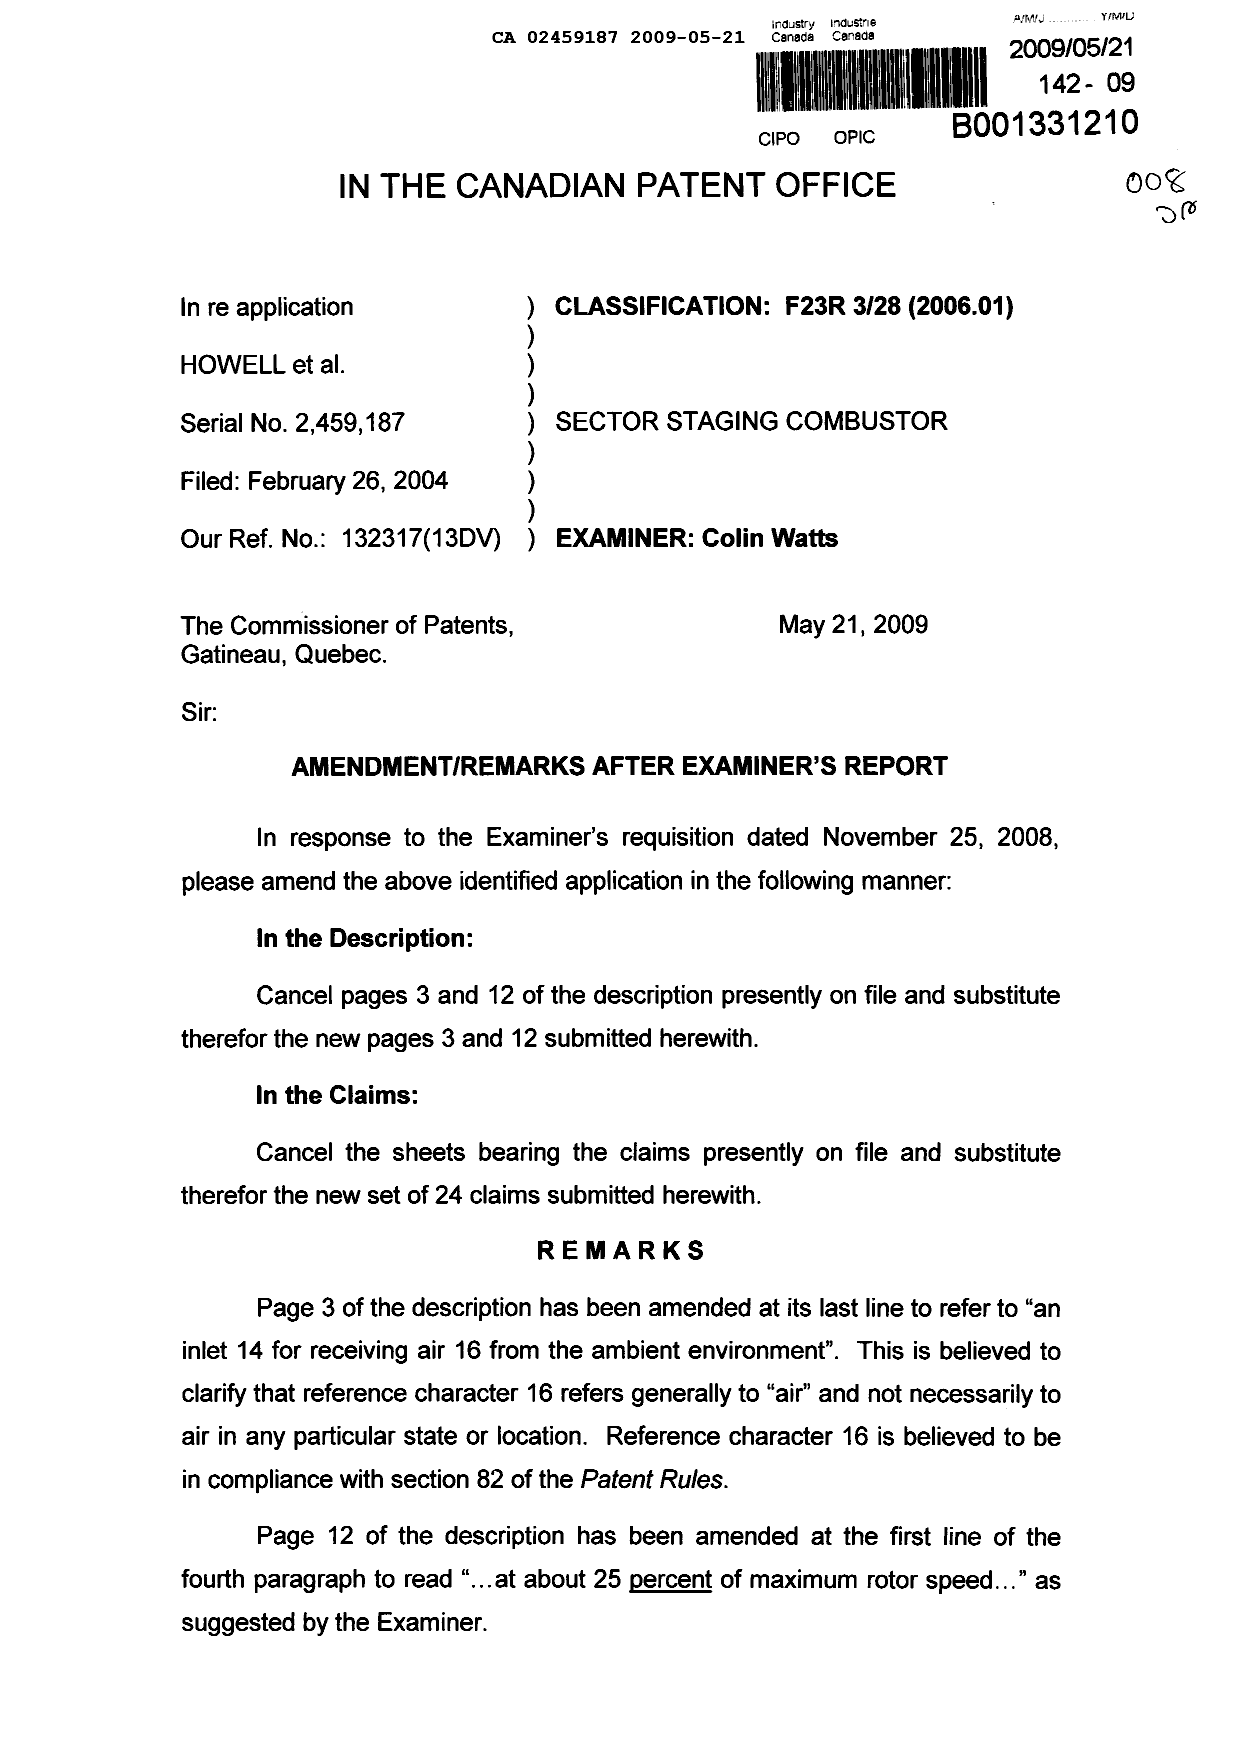 Document de brevet canadien 2459187. Poursuite-Amendment 20090521. Image 1 de 12